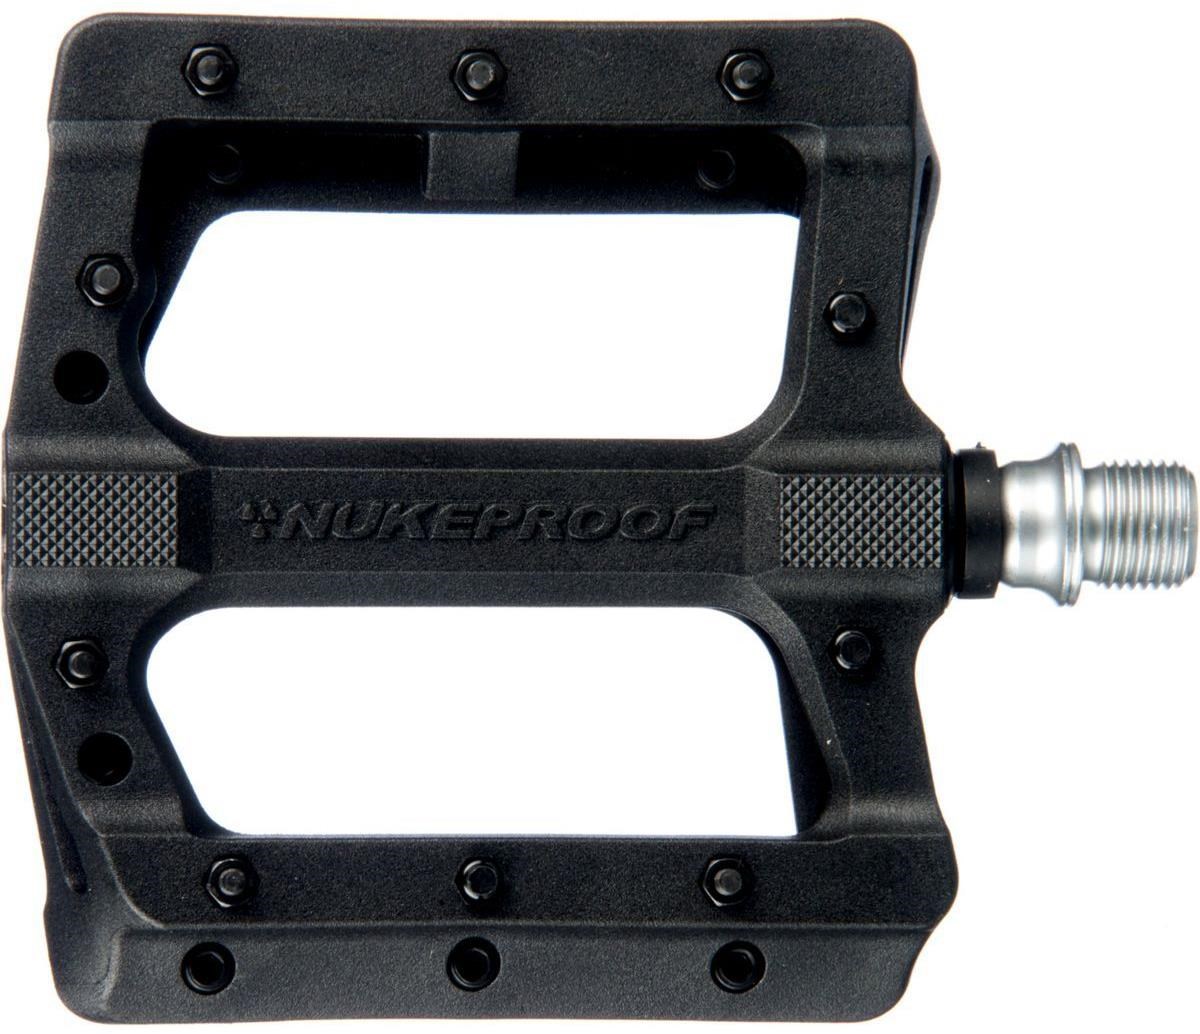 Nukeproof EVO (Electron EVO) Flat Pedals product image